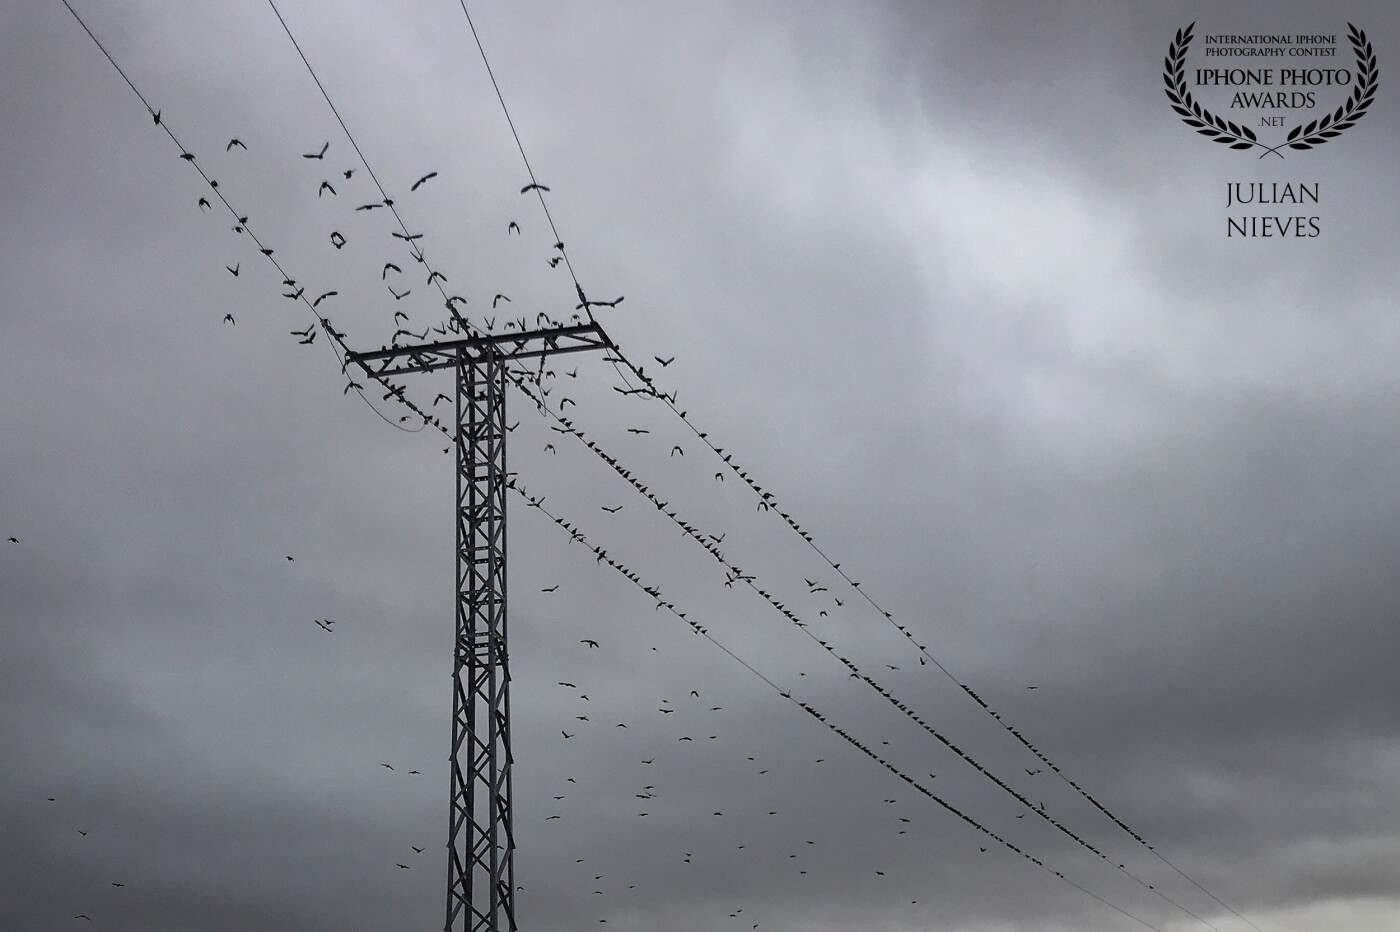 Imagen realizada en una tarde de paseo en Madridejos-Toledo, con un ambiente de nubes y bastantes pájaros revoloteando y posándose en los cables  y torre eléctrica, me recordó  la película de  Alfred Hitchcock "Los pájaros", por eso esta imagen.